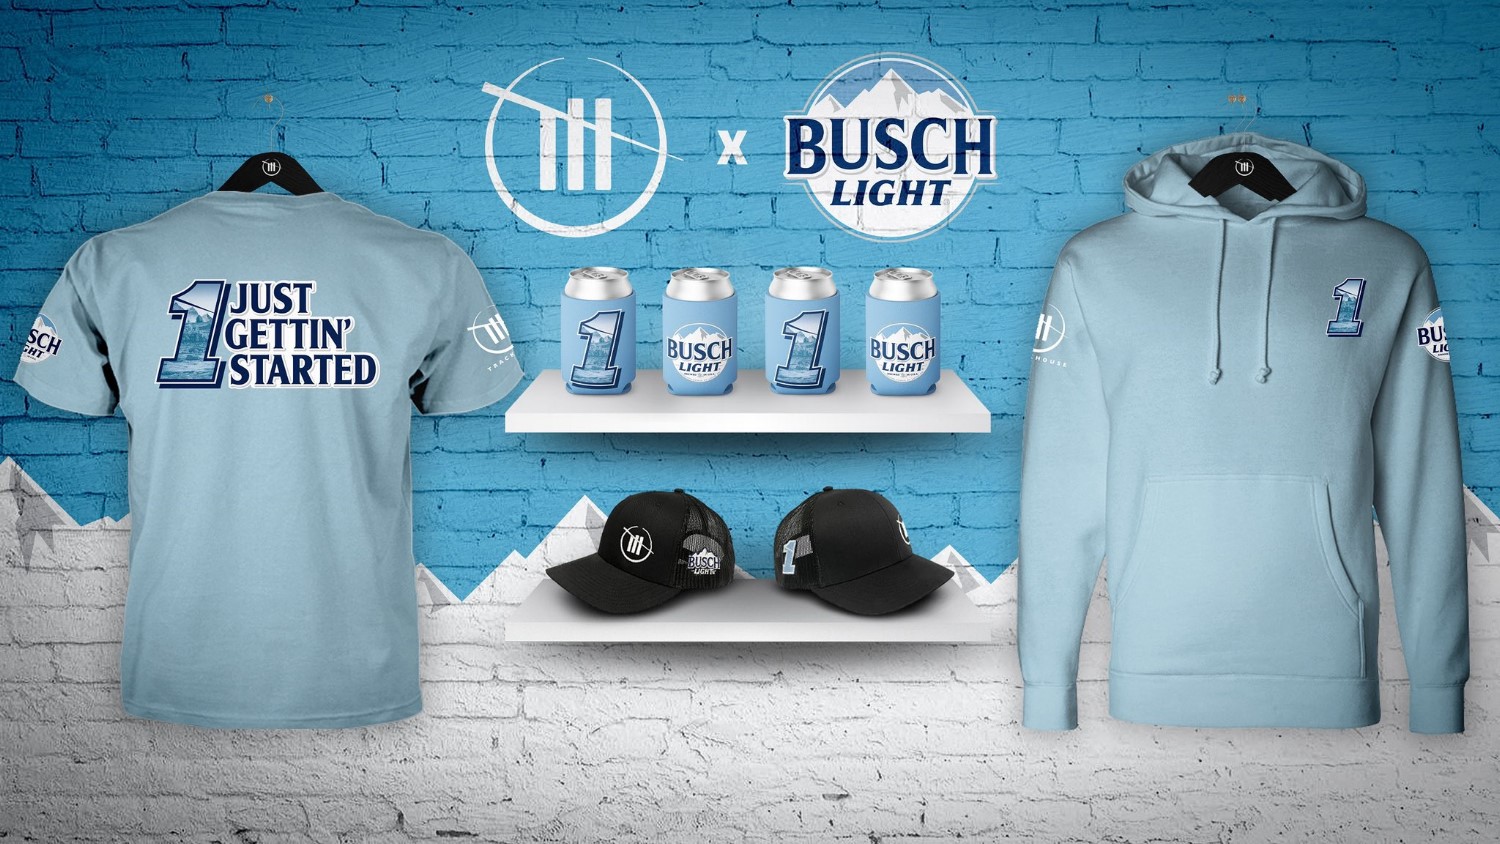 Busch Light Ross Chastain merchandise